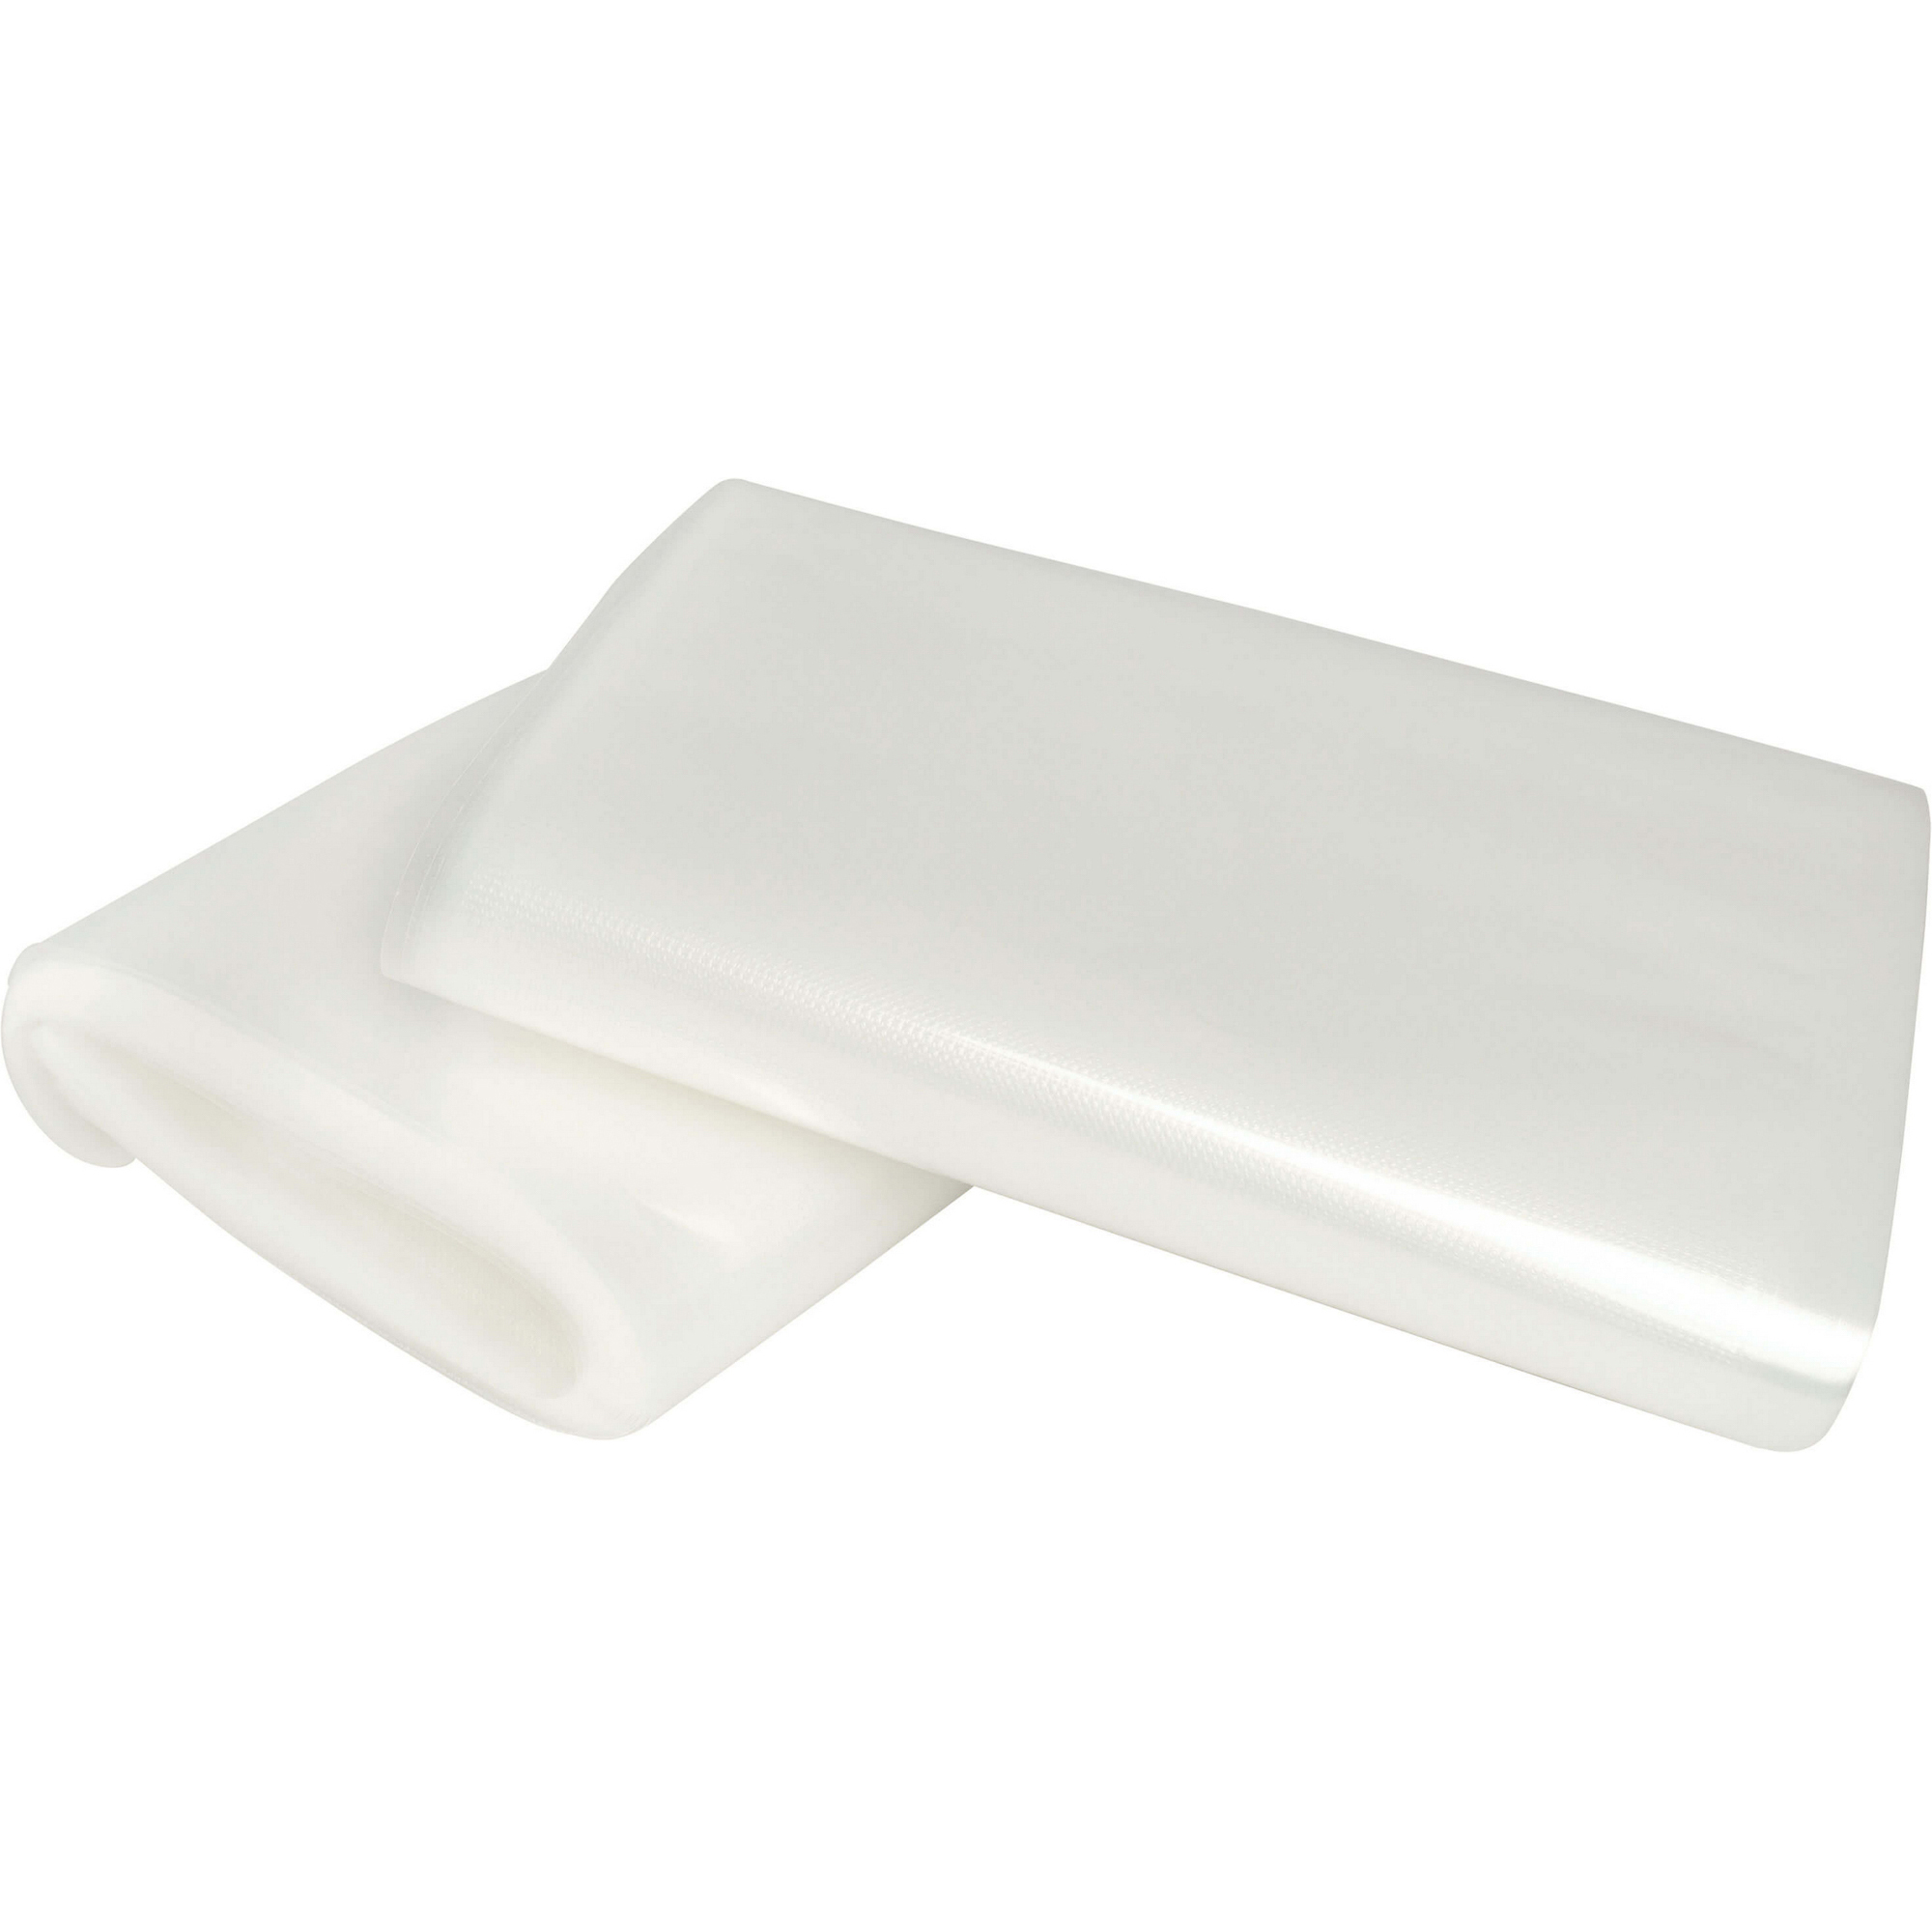 Пакеты для вакуумного упаковщика Gemlux GL-VB2030-50P, цвет белый, размер 20x30 см